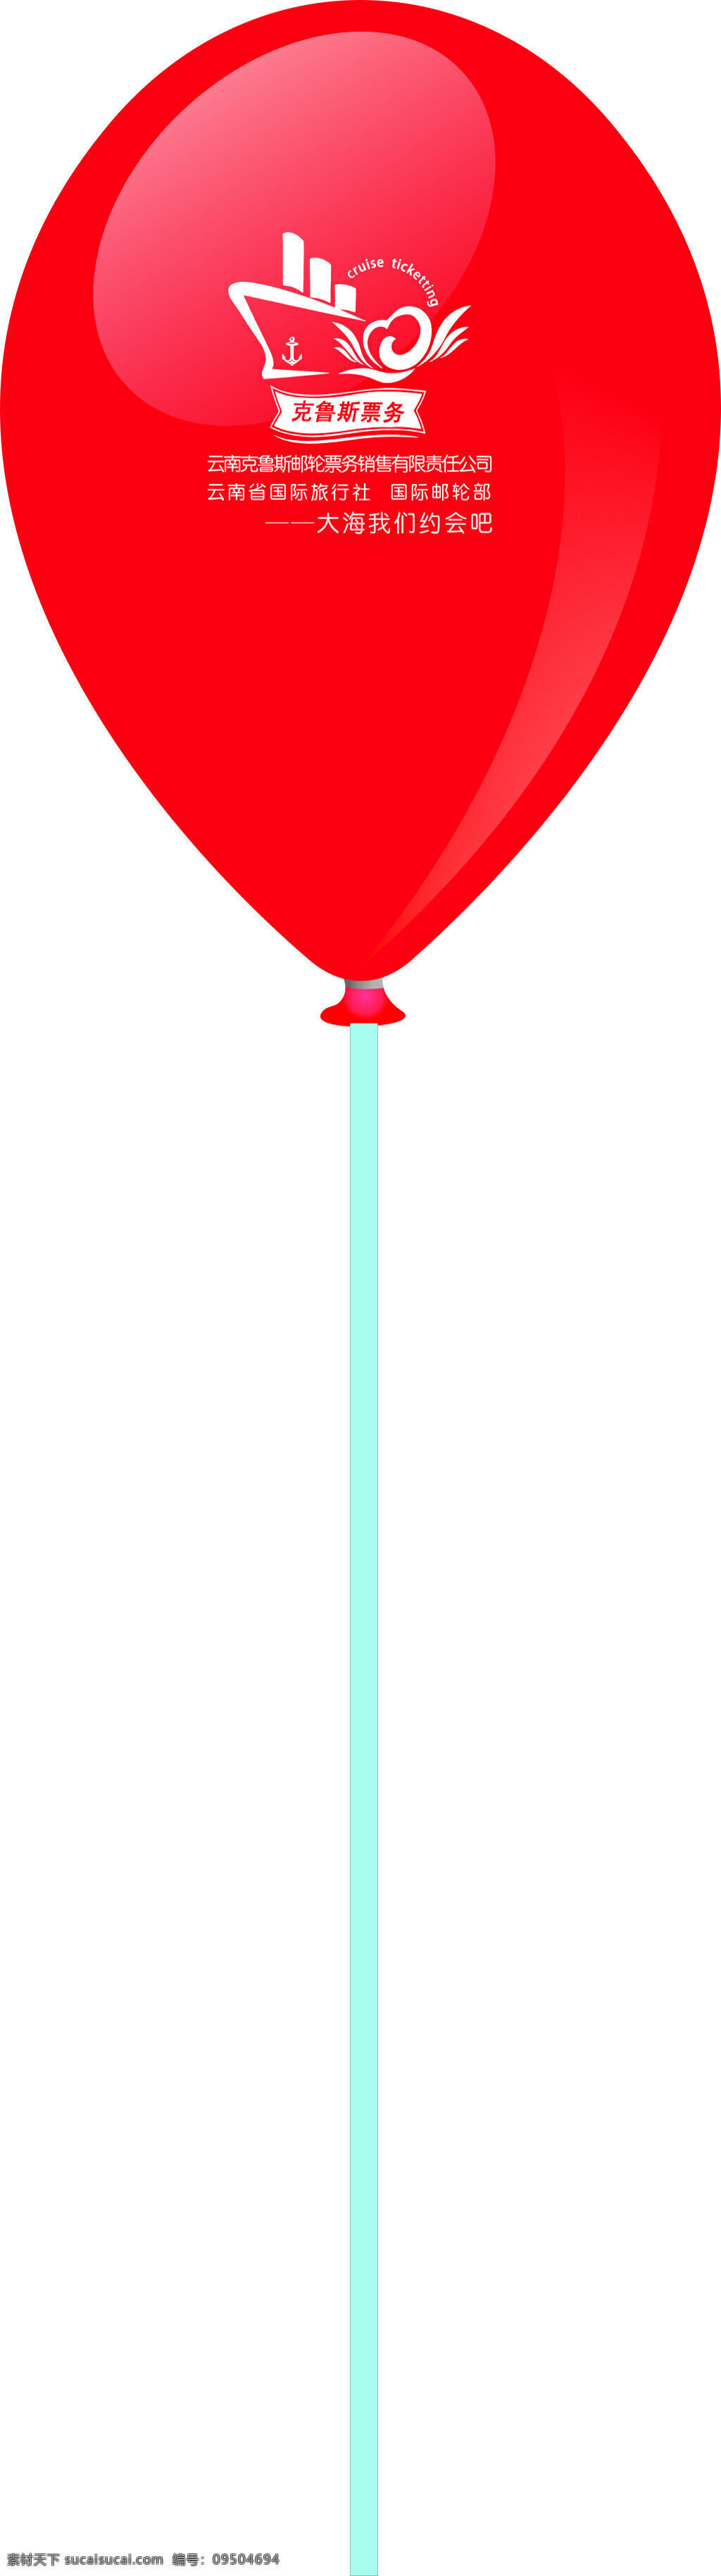 克鲁斯票务 克鲁斯 票务 logo 标志 气球 白色